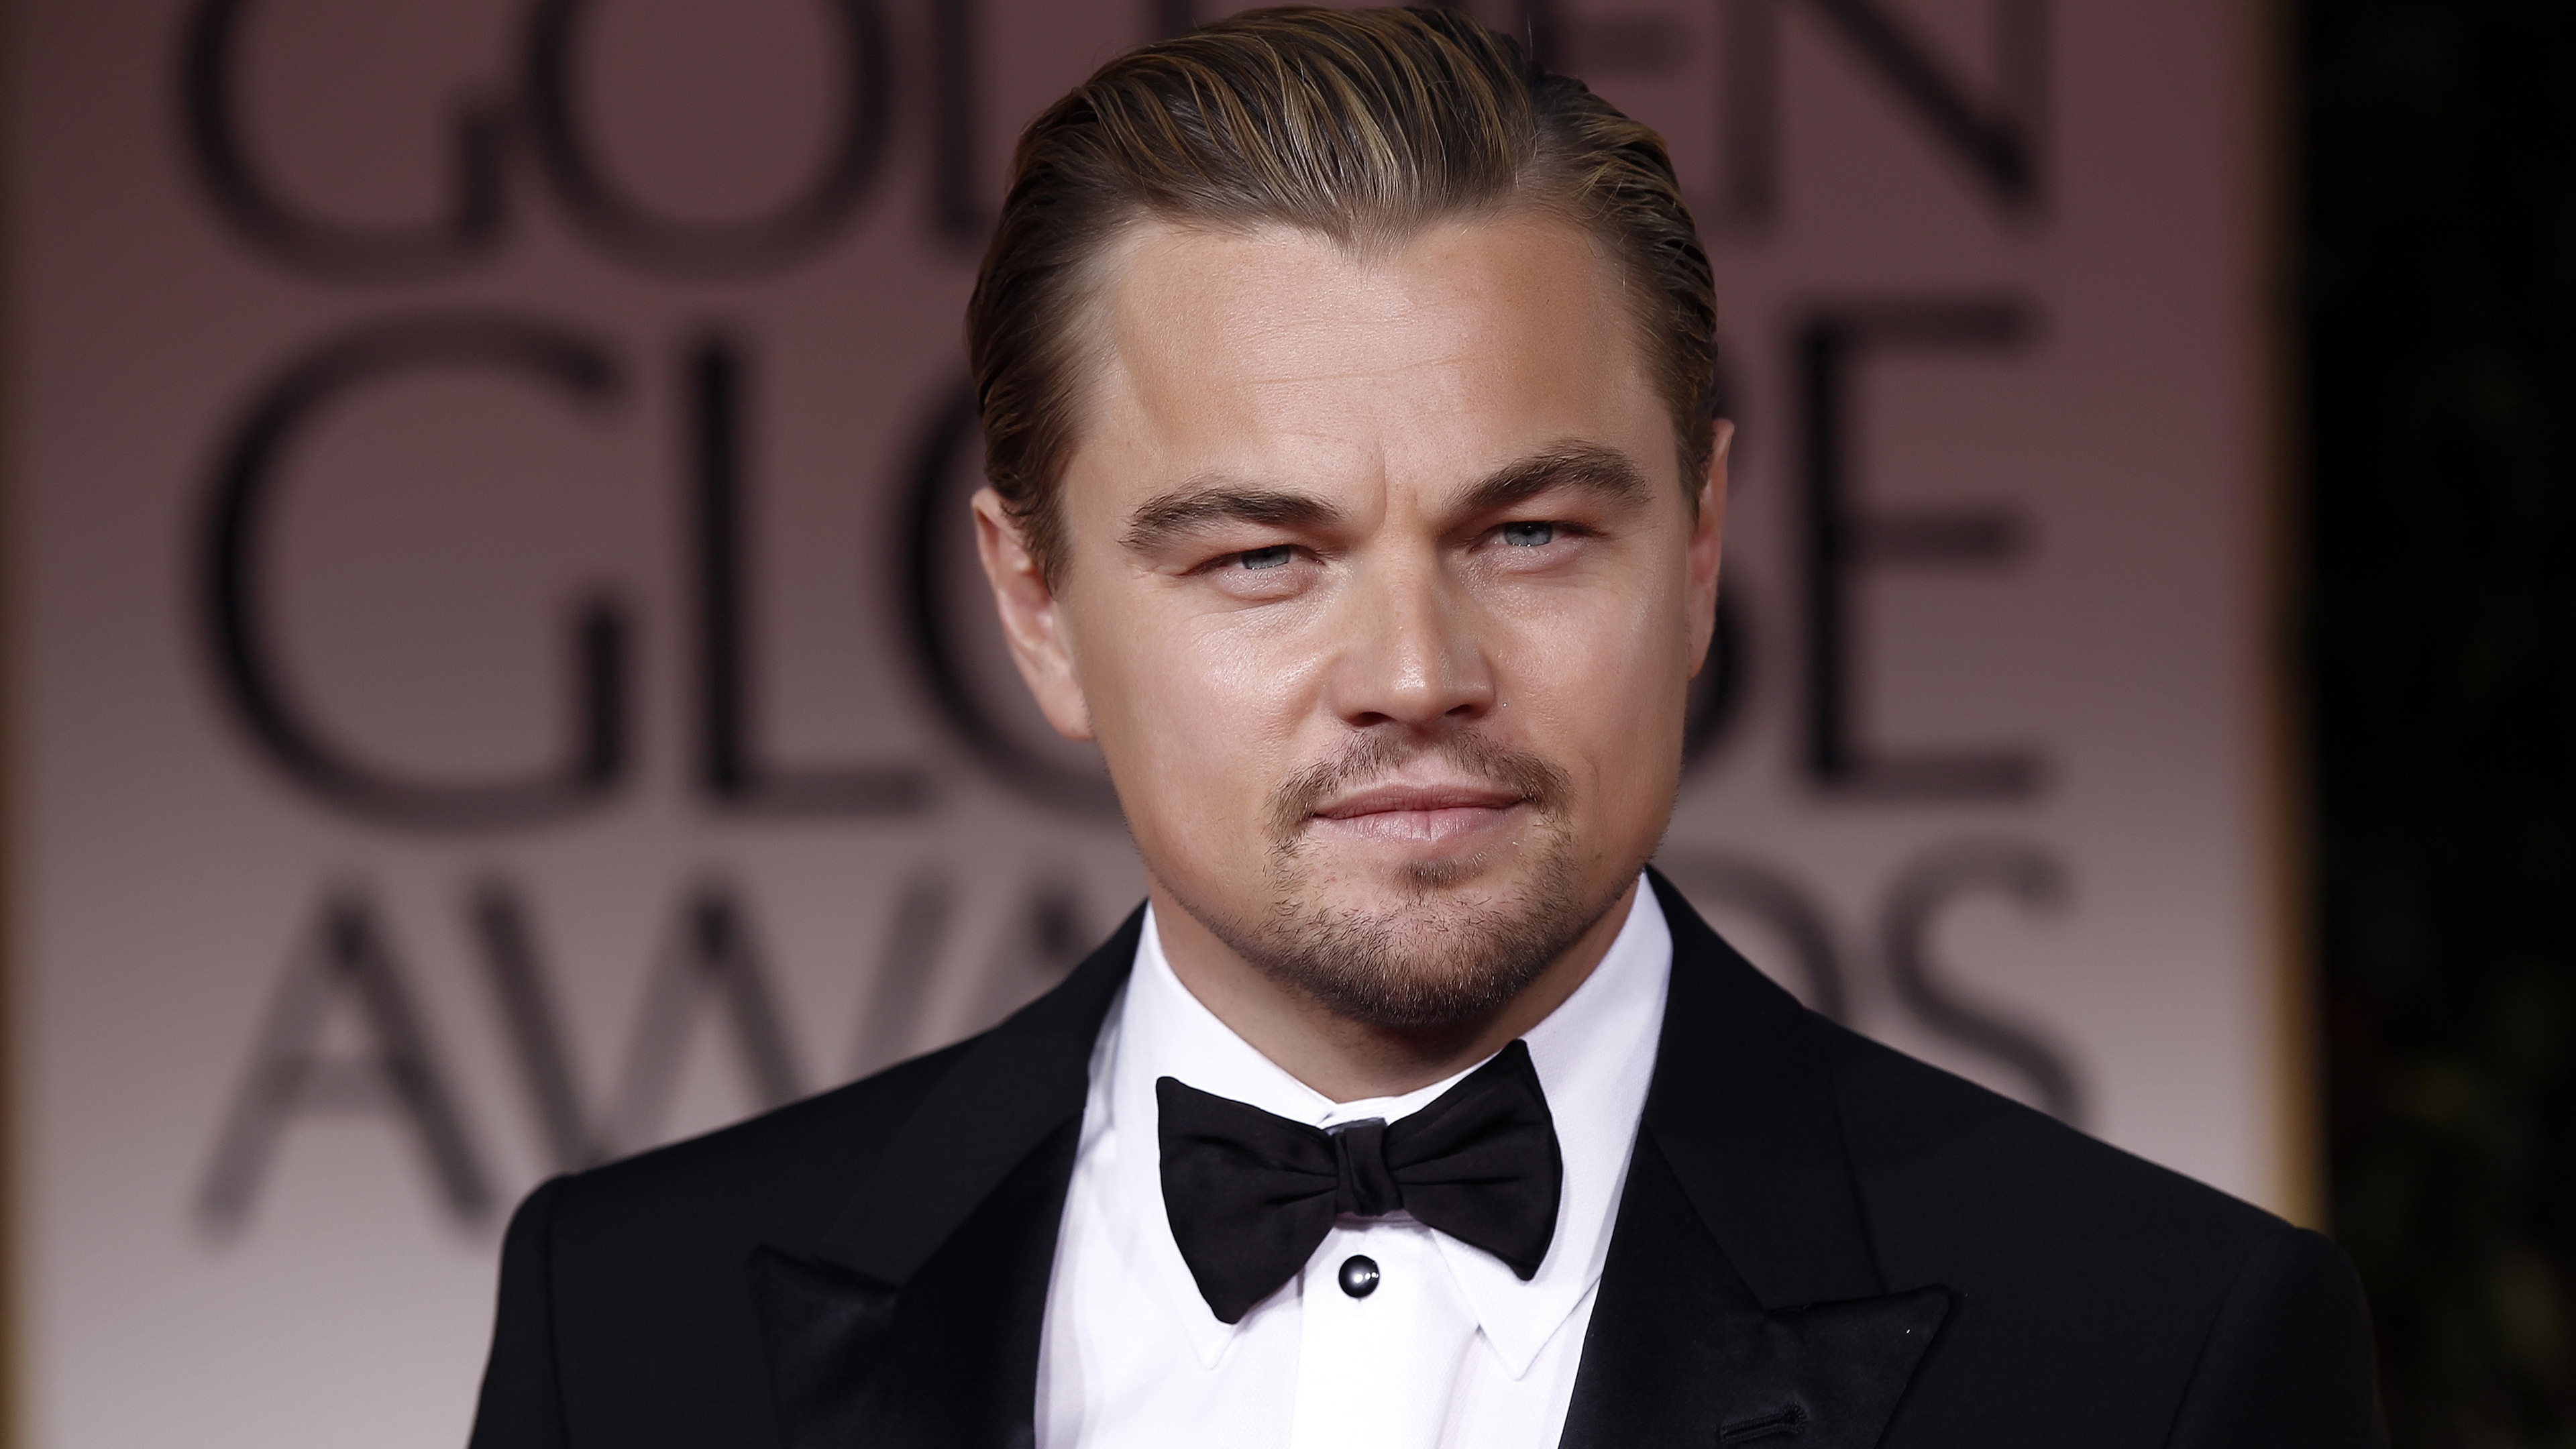 Leonardo DiCaprio in Tuxedo for 3840 x 2160 Ultra HD resolution